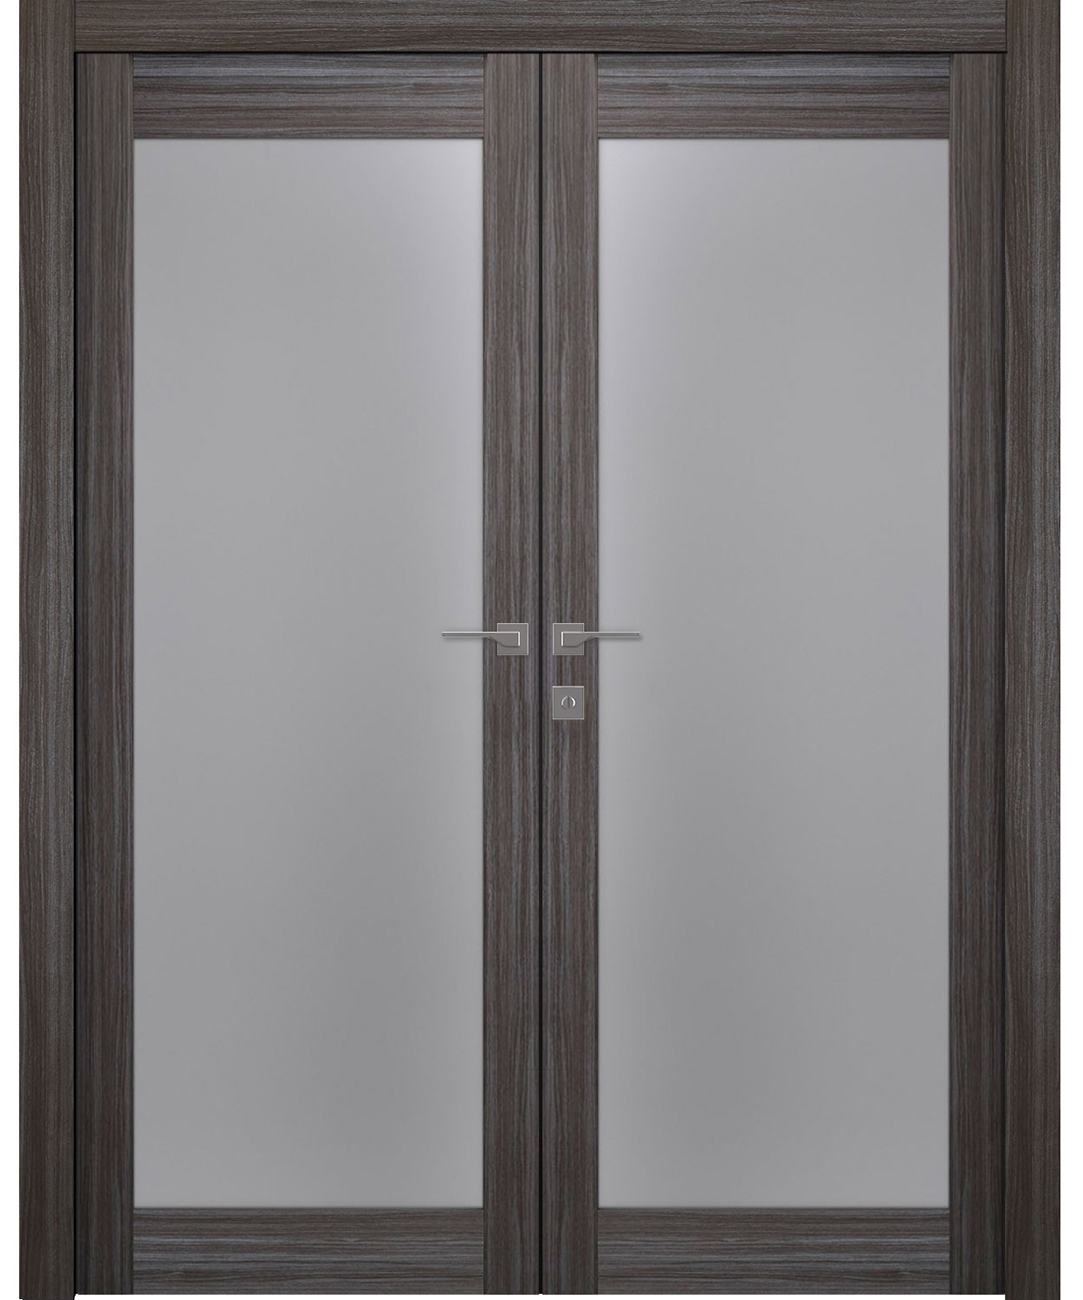 Modern interior door Palladio 207 Vetro Gray Oak Double doors for $738. ...